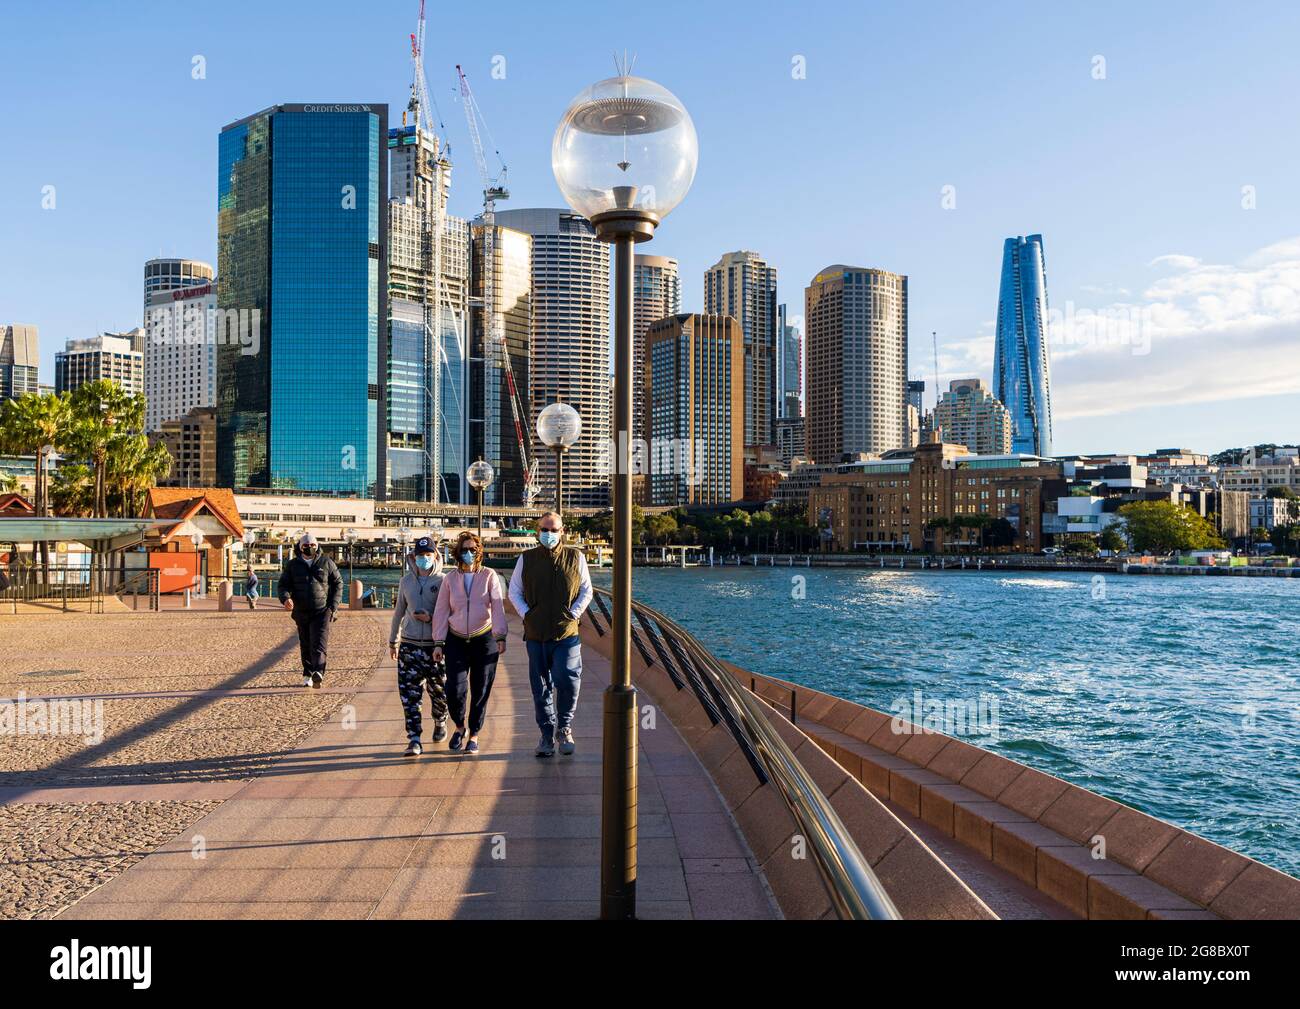 Spaziergänger in Masken trainieren am Circular Quay, Sydney, Australien, während einer Pandemie-Sperre. Blaues Himmel und Skyline im Hintergrund Stockfoto